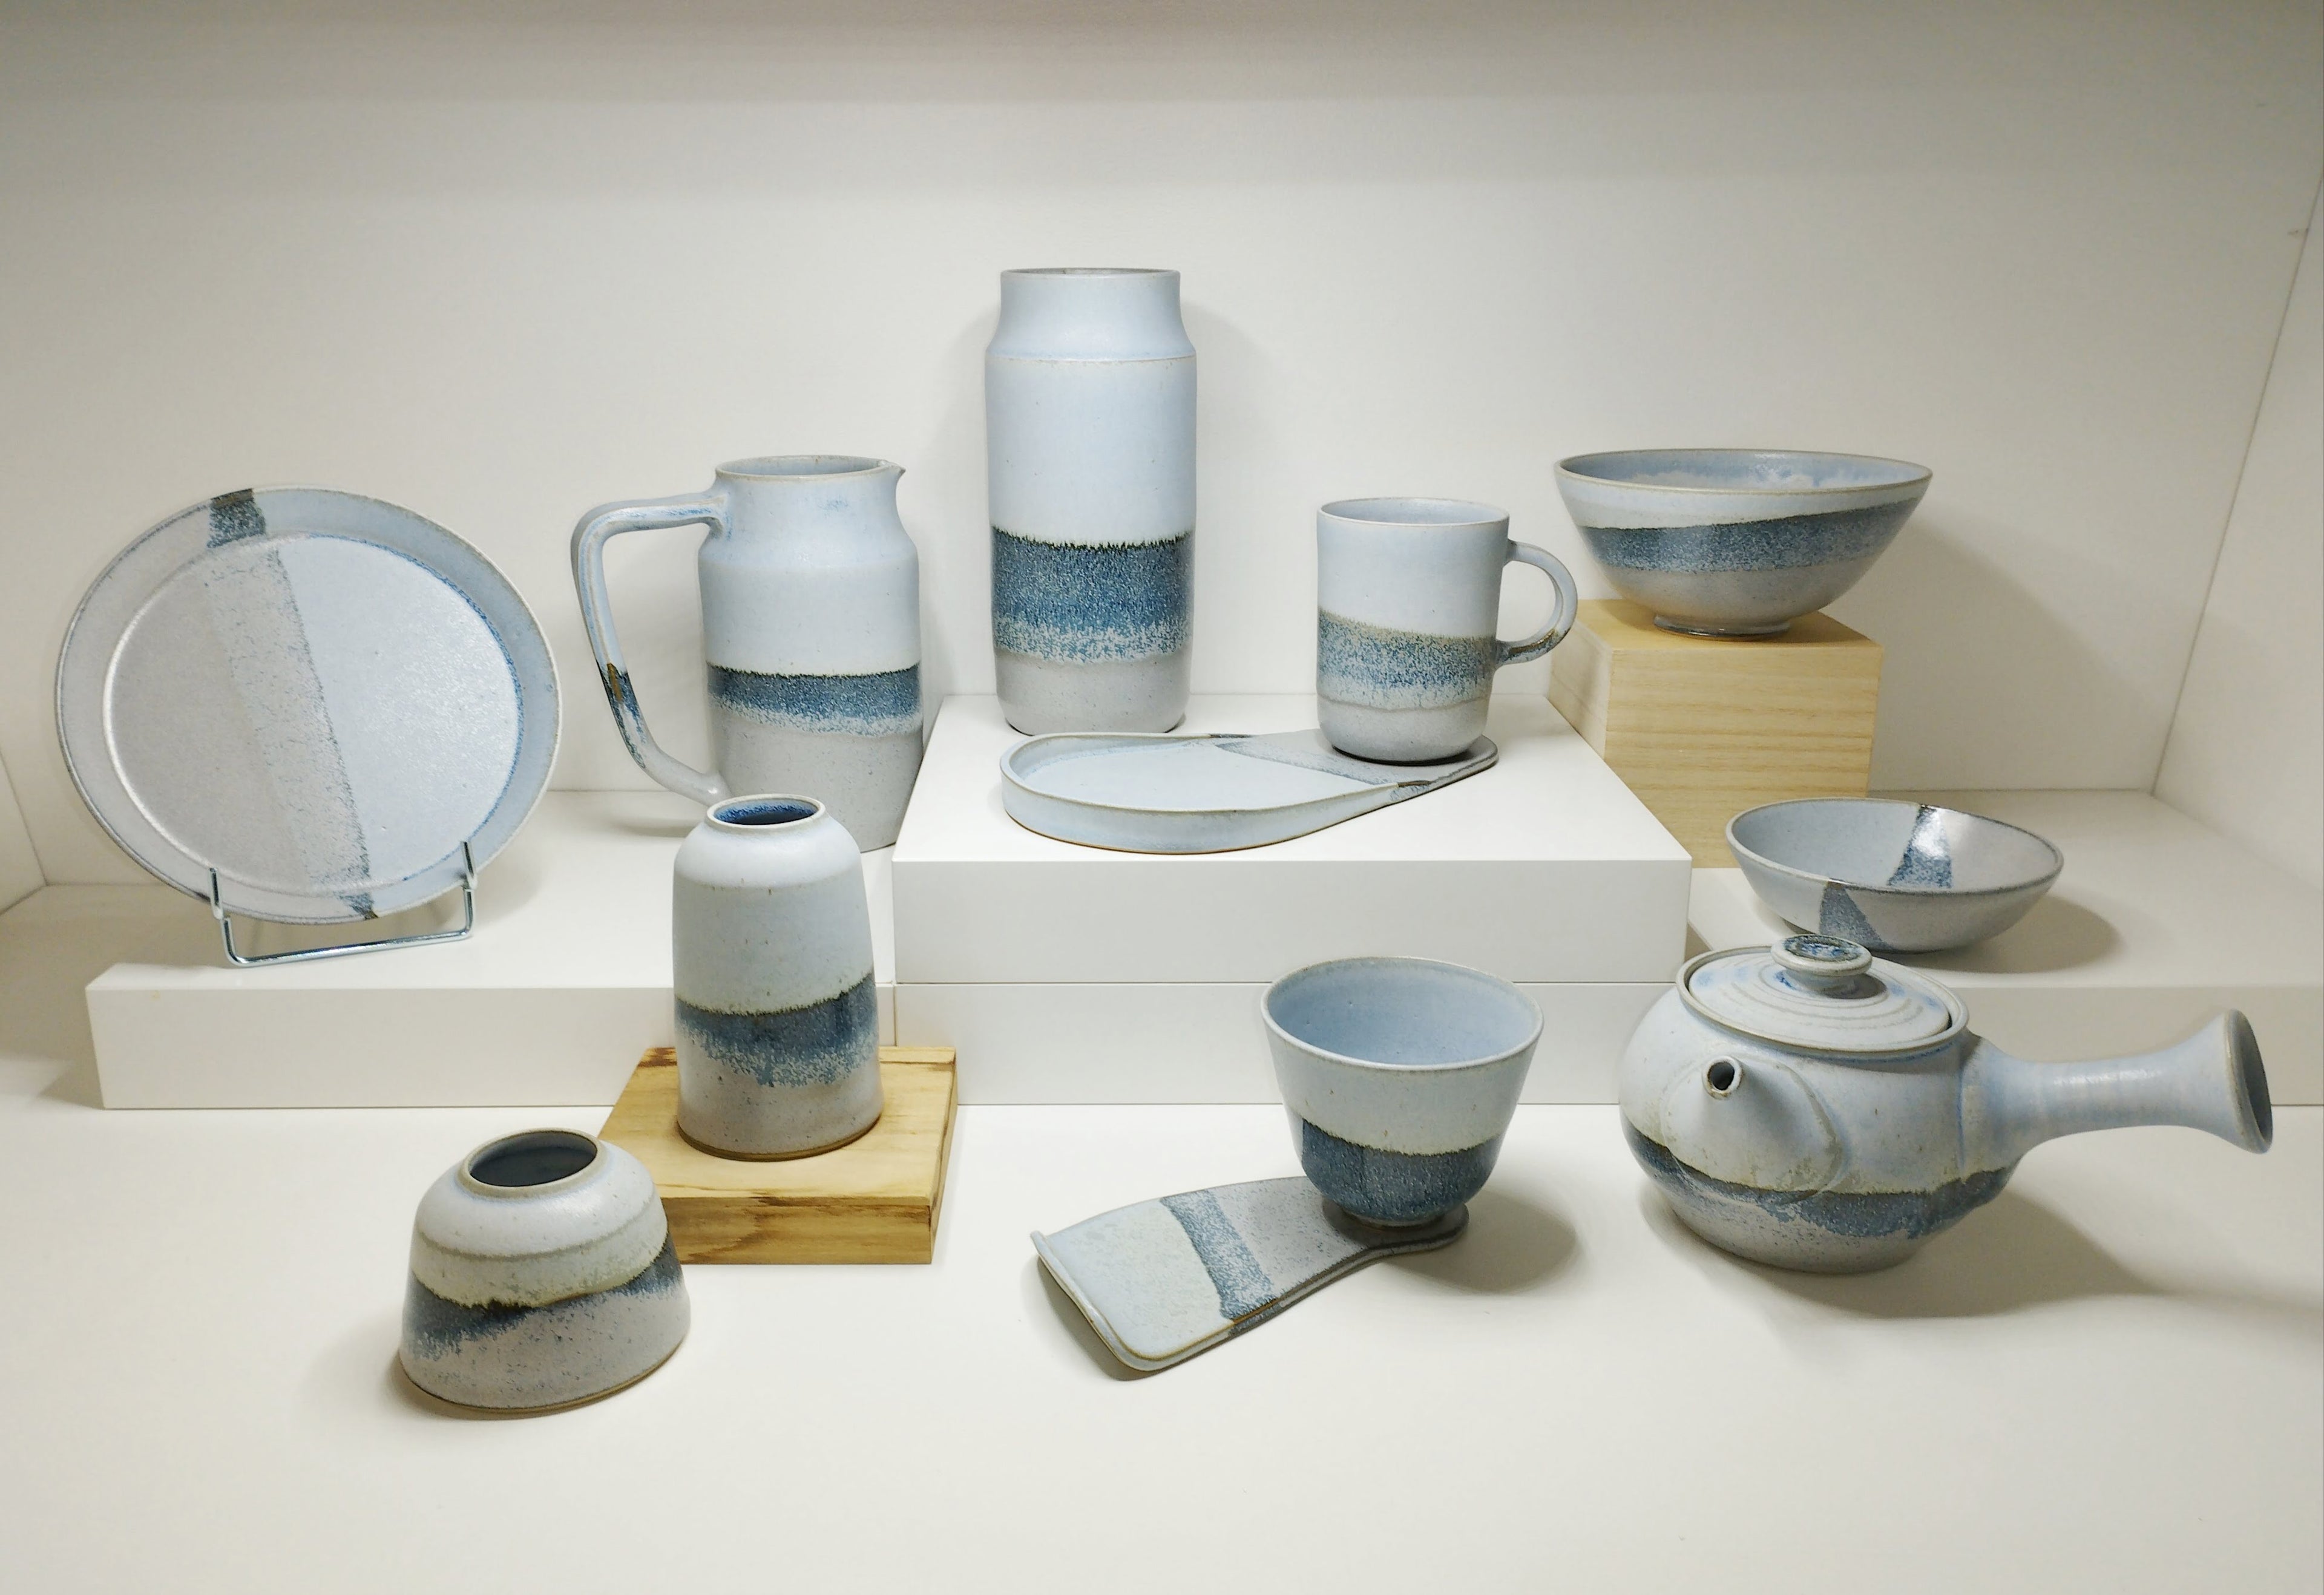 Vaisselle émaillée gris et bleu ciel créant une bande bleu marine au niveau de la superposition inspiration Japon